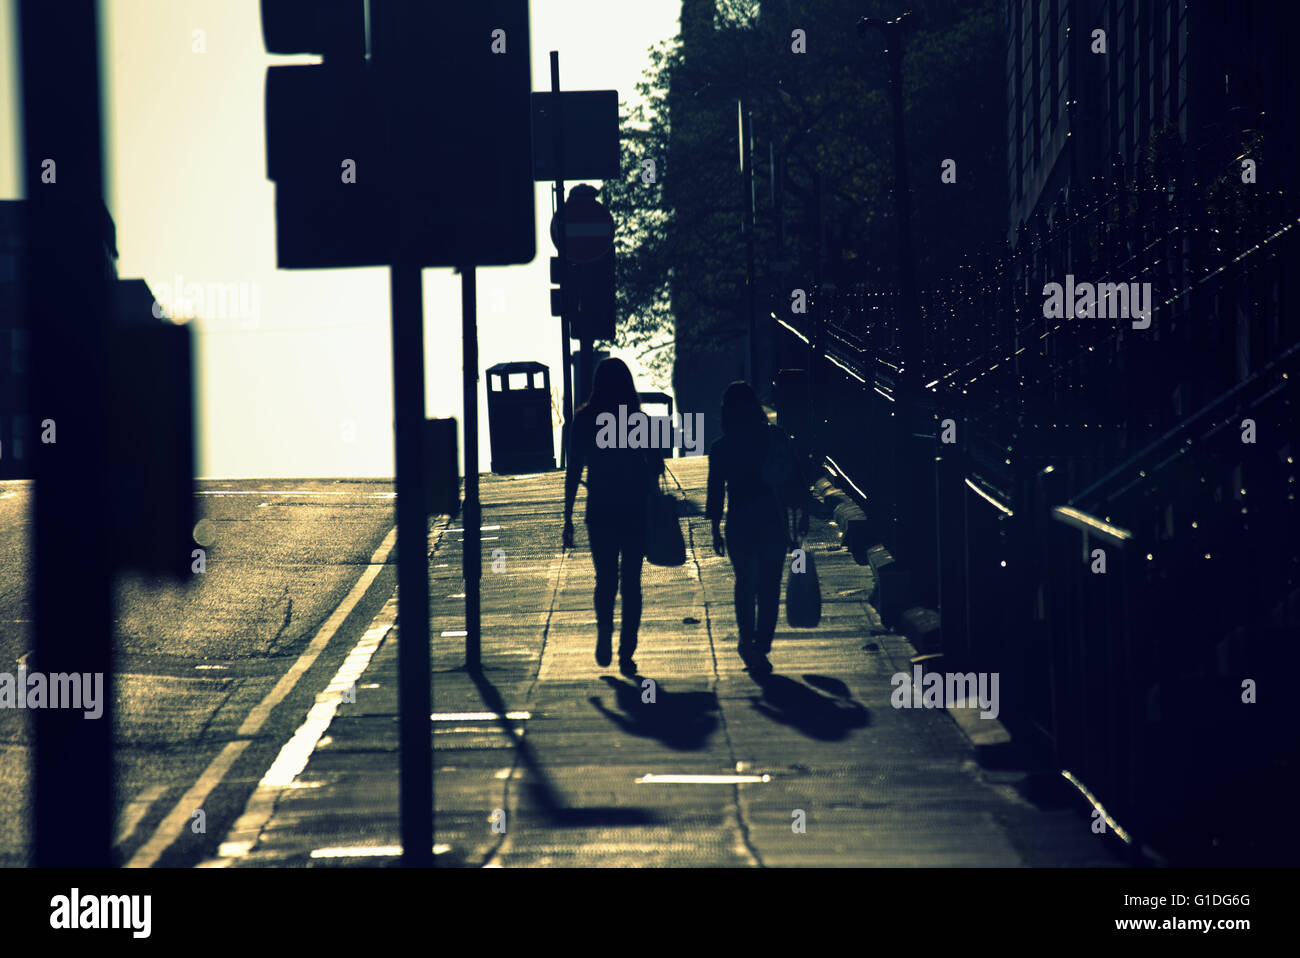 Silhouette von zwei Frauen mit Taschen auf Glasgow Straße mit Straße Contre-Jour hinterleuchtete in Glasgow, Schottland, Großbritannien. Stockfoto